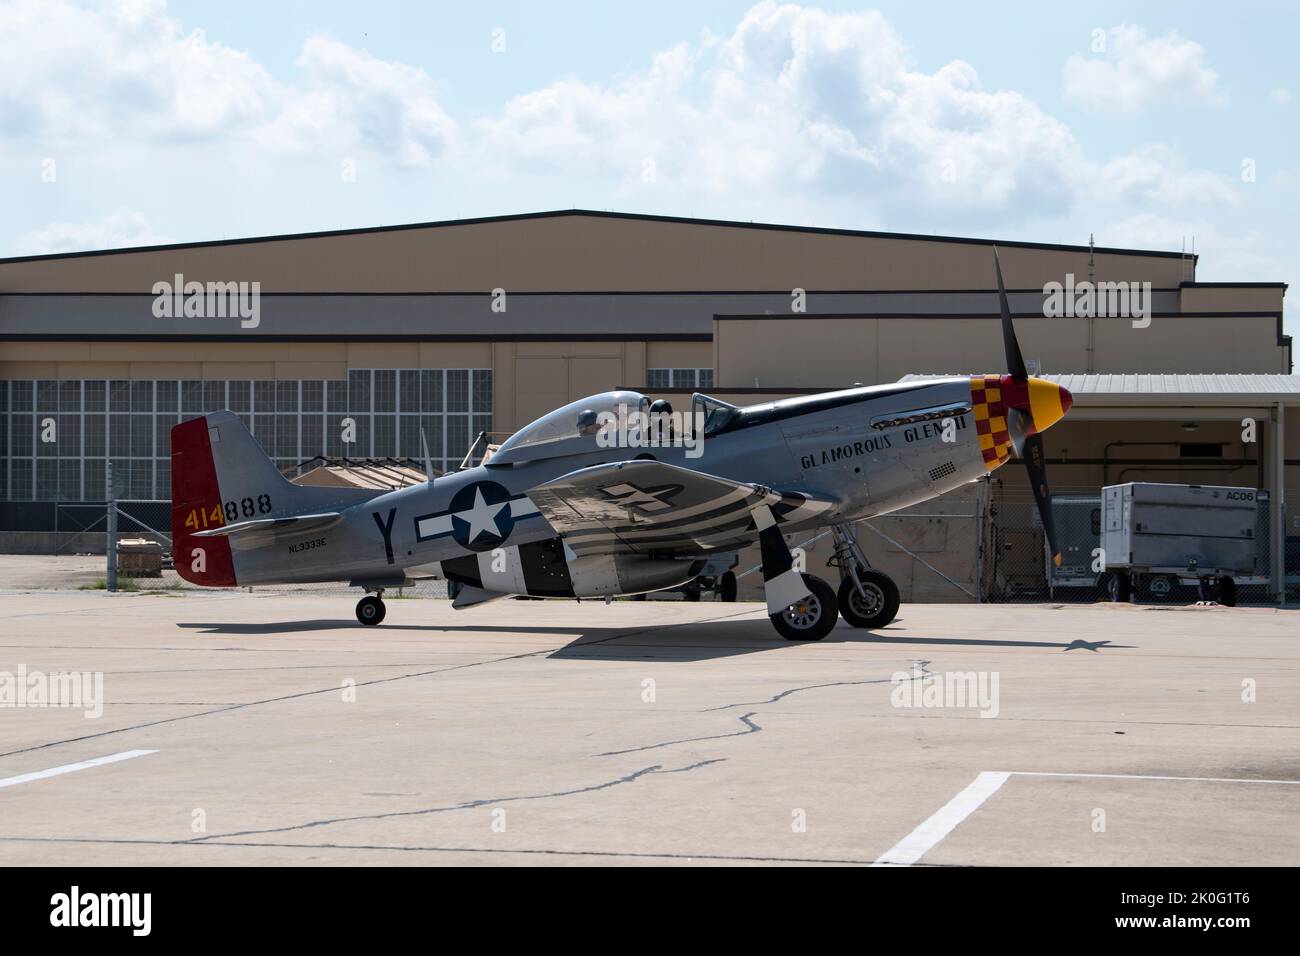 En l'honneur du 75th anniversaire de la United States Air Force, un P-51 historique Mustang de 1941 a volé en formation avec F-16s de l'aile Fighter 149th à la base conjointe San Antonio-Lackland, le 10 septembre 2022. Cet avion de la deuxième Guerre mondiale n'était pas seulement le modèle 2nd d'avion à voler par le 149th FW, mais il a également été initialement transporté par Chuck Yeager, le premier pilote enregistré pour briser la barrière sonore. (Photo de la Garde nationale aérienne par le sergent d'état-major. Katie Schultz) Banque D'Images